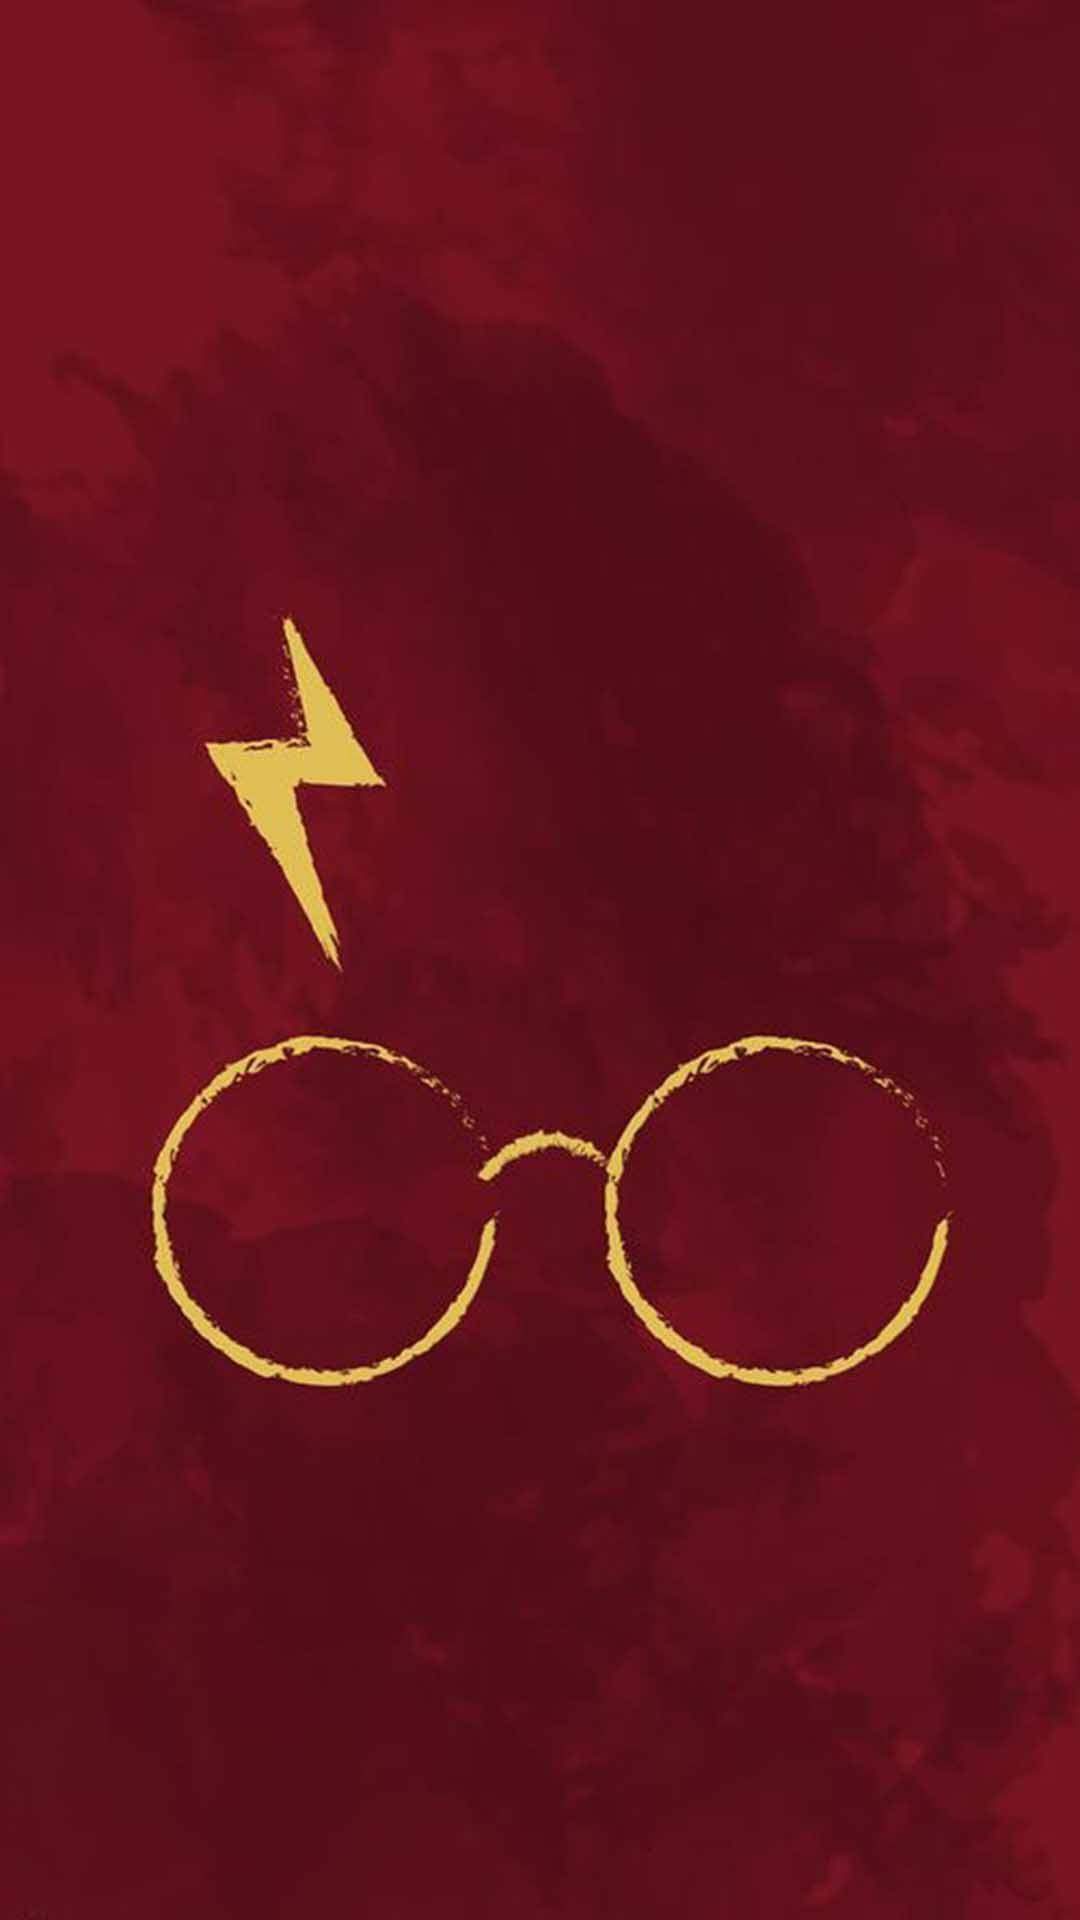 Harry Potter Aesthetic Wallpaper